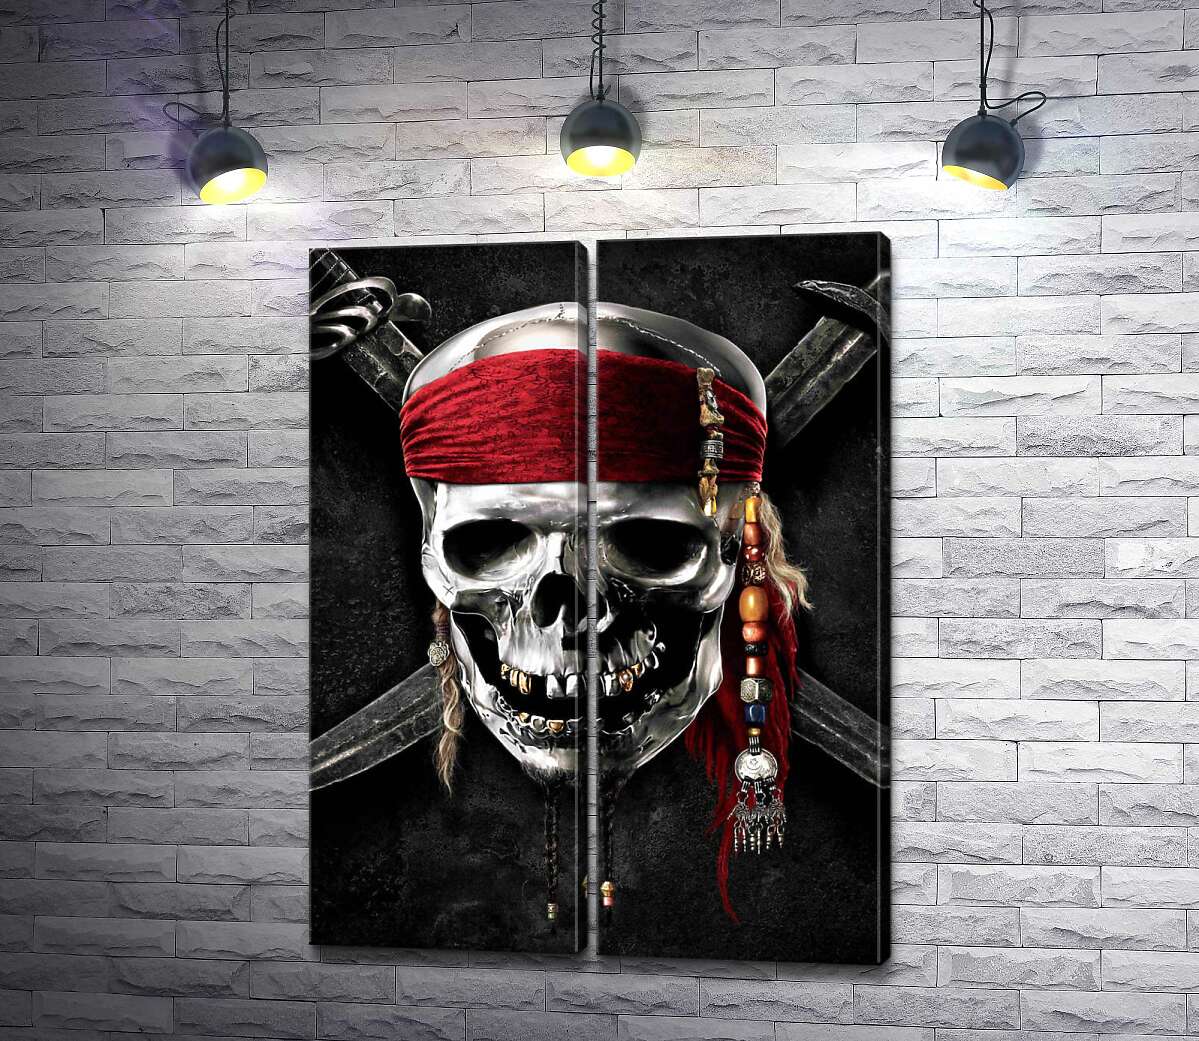 модульна картина Славнозвісний череп Джека Горобця (Jack Sparrow) на постері до фільму "Пірати Карибського моря" (Pirates of the Caribbean)